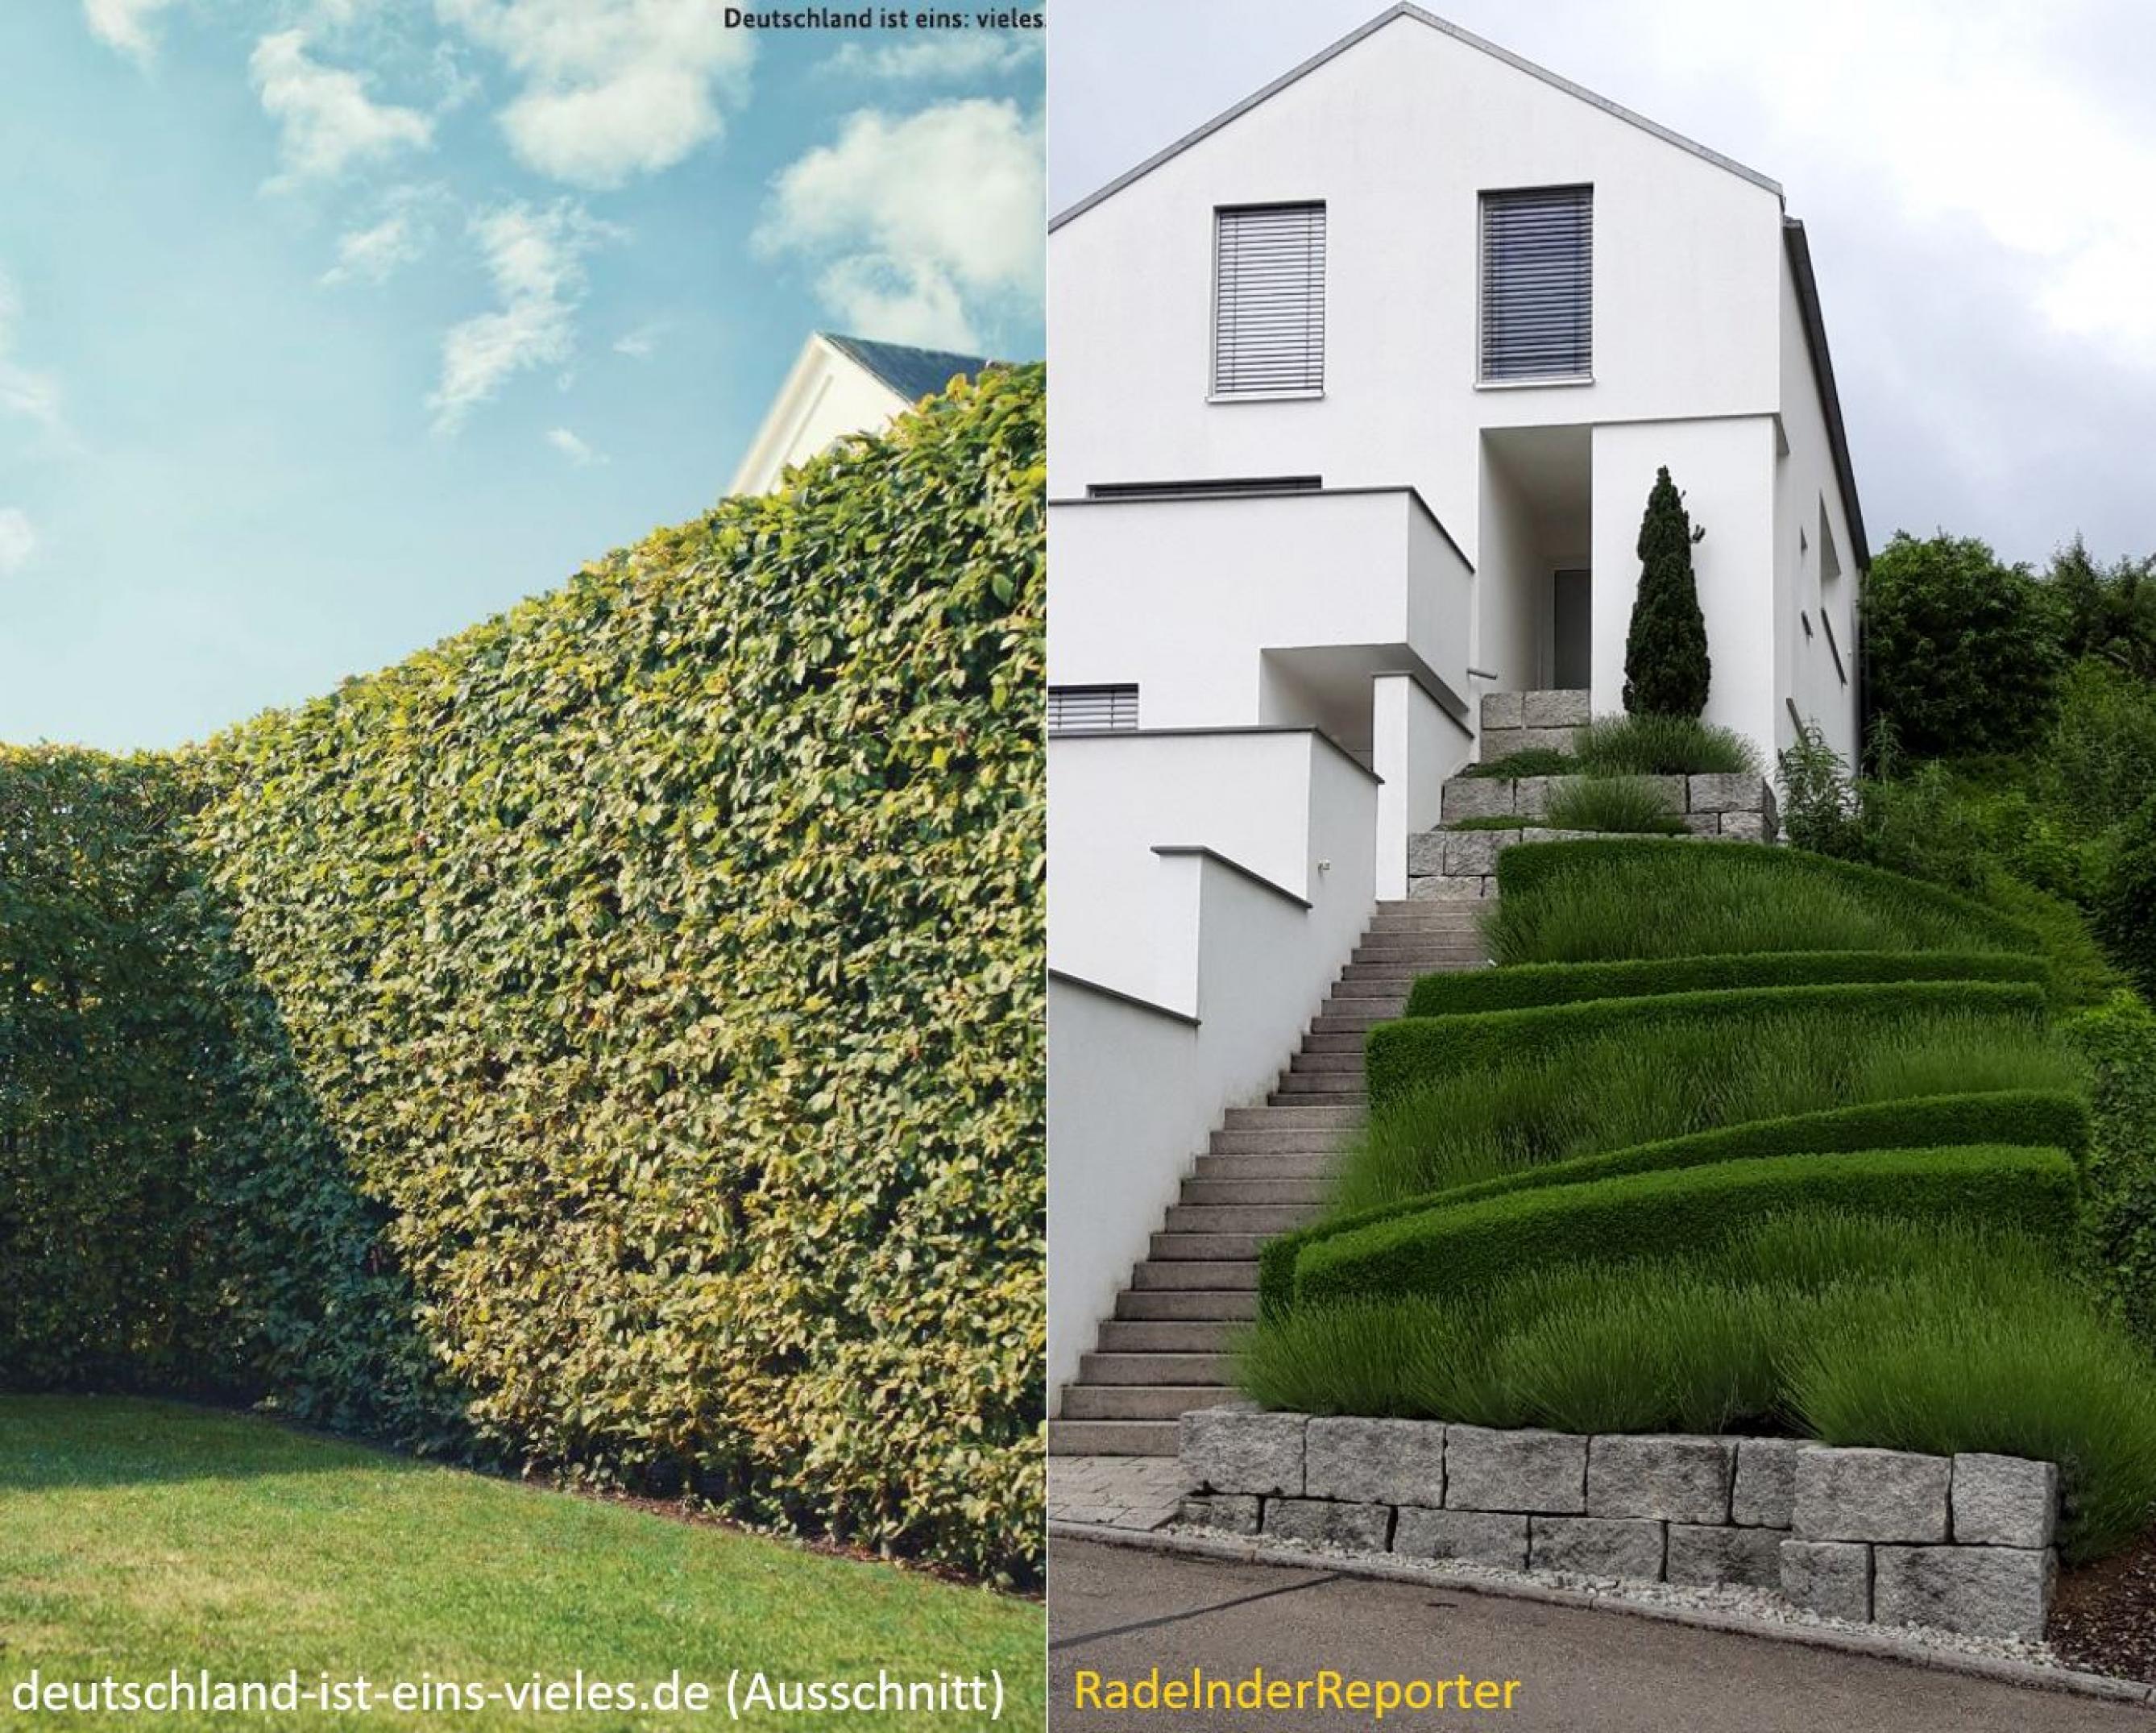 zweigeteiltes Bild: rechts das Bild der Regierungskampagne, links das des RadelndenReporters; beide Bilder zeigen akkurat gepflegte Anwesen in Deutschland.